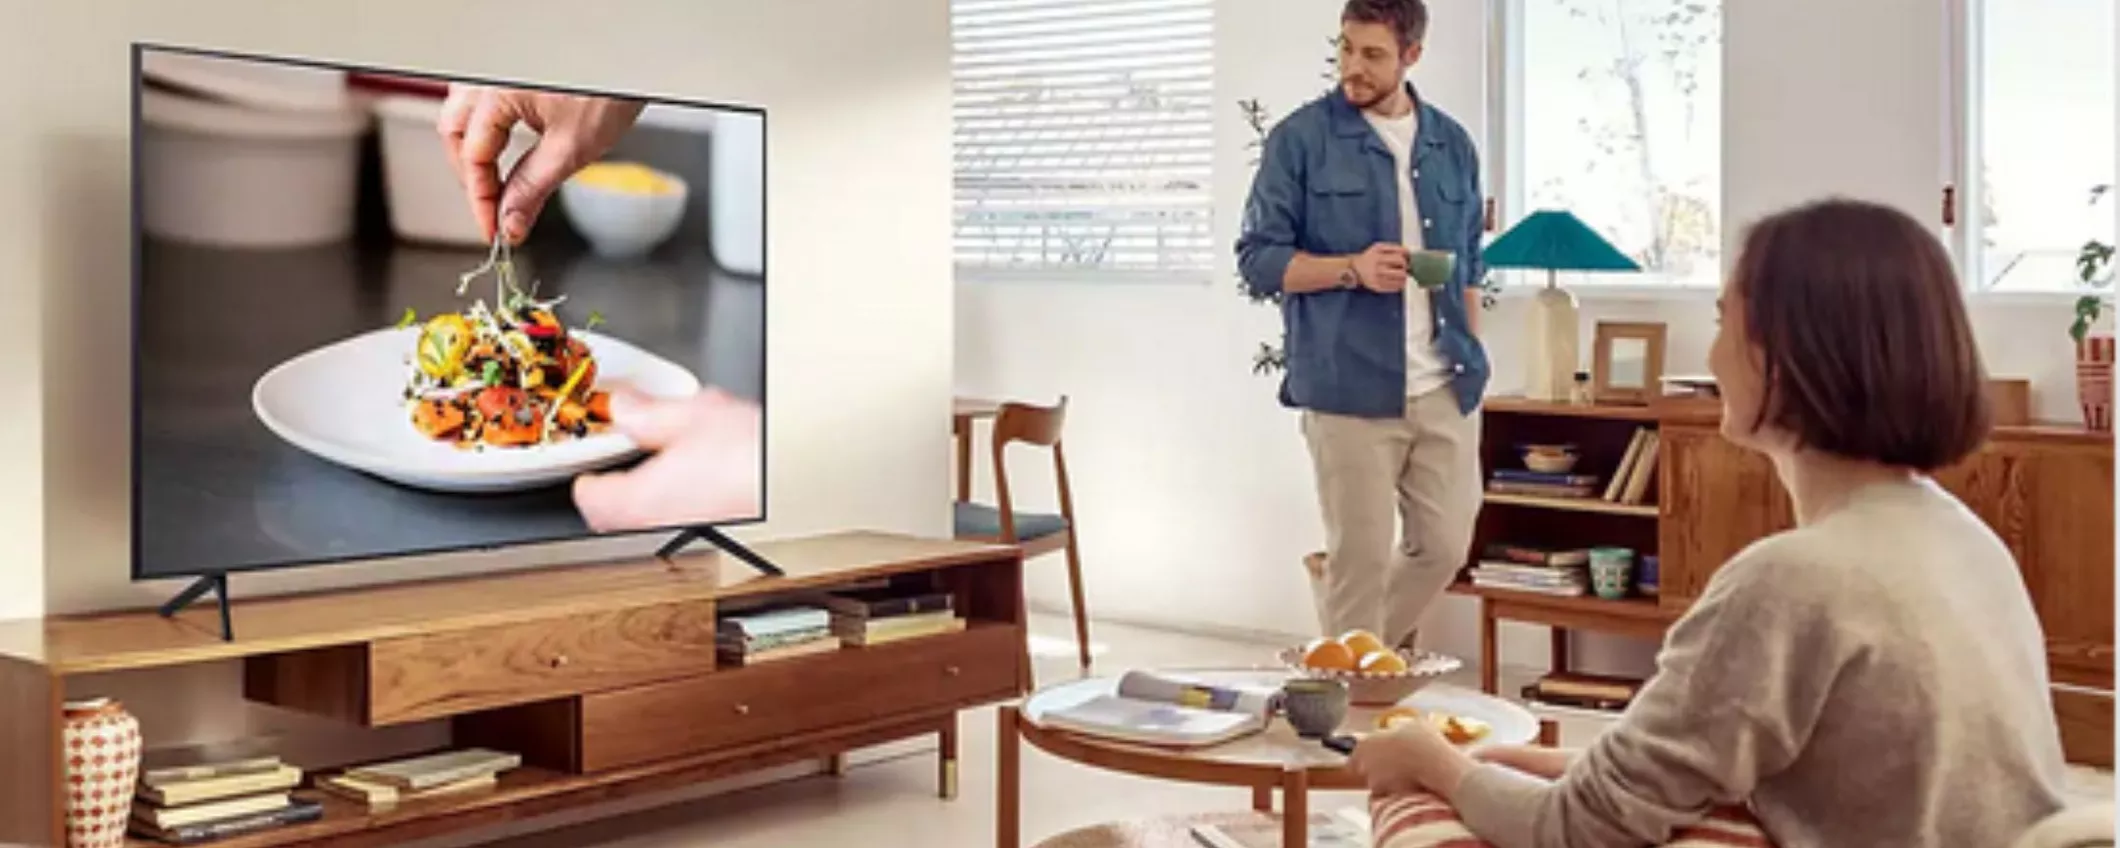 Ora o mai più: -52% su eBay per l'EPICA smart TV Samsung UHD 4K 50